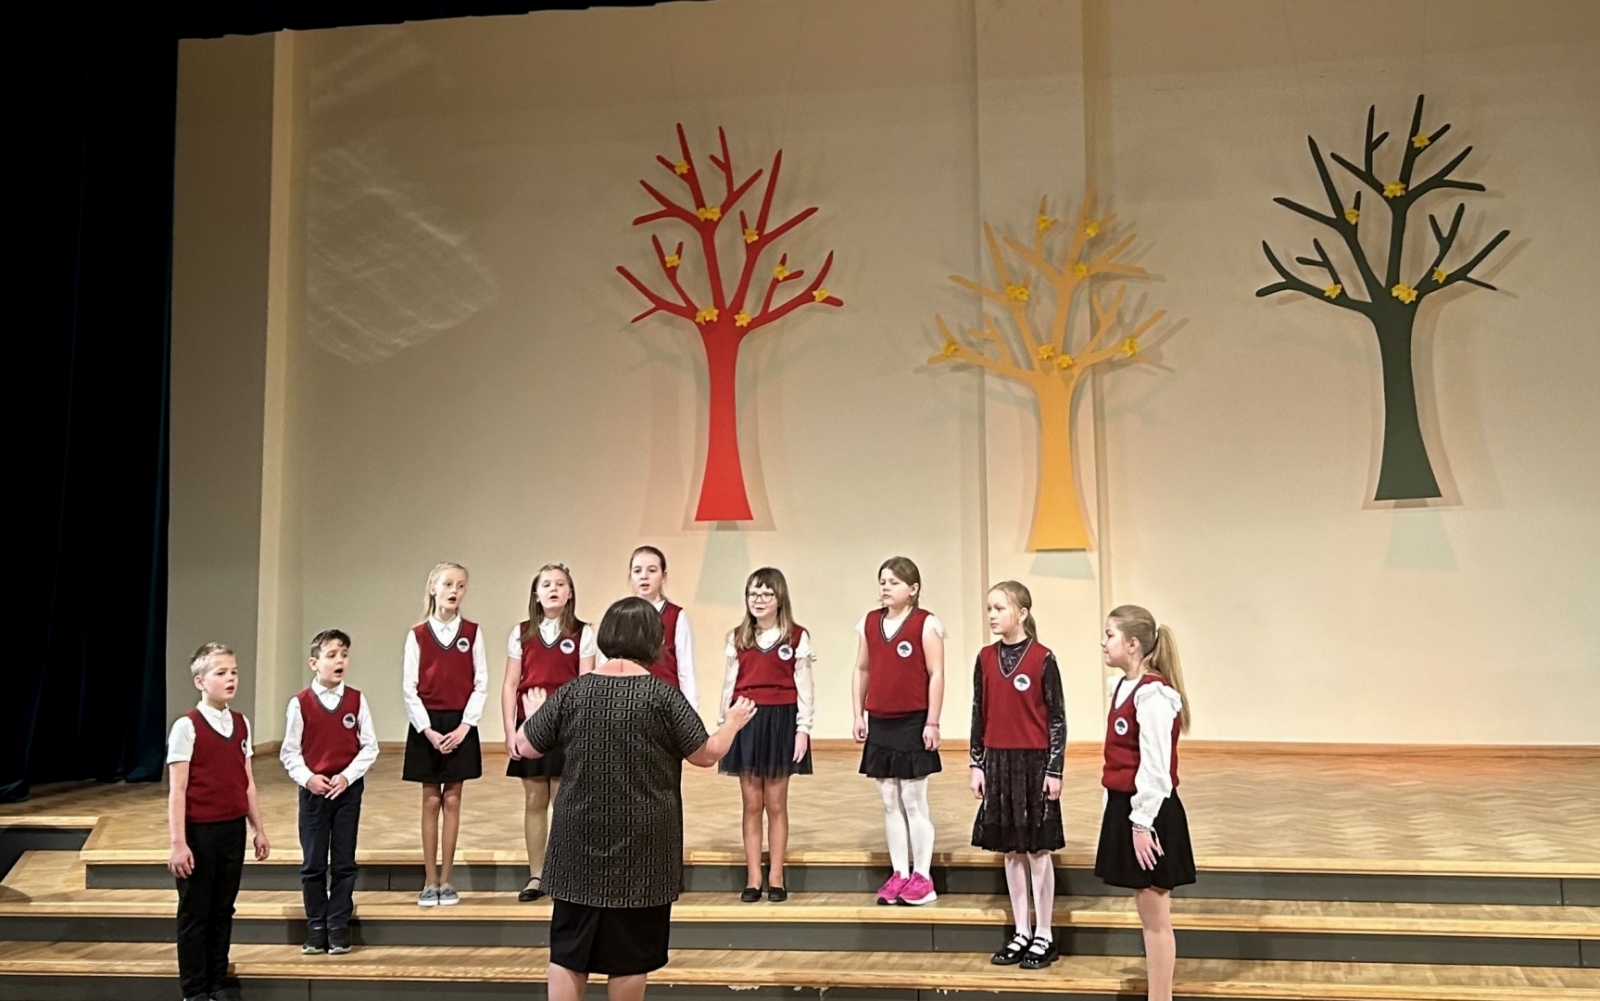 9 bērn Ogresgala pamatskolas formas tērpos - sarkanas vestes, baltas blūzes, melni svārki dzied uz skatuves, diriģē skolotāja. Fonā dekorācijās krāsaini koki 02.2024.